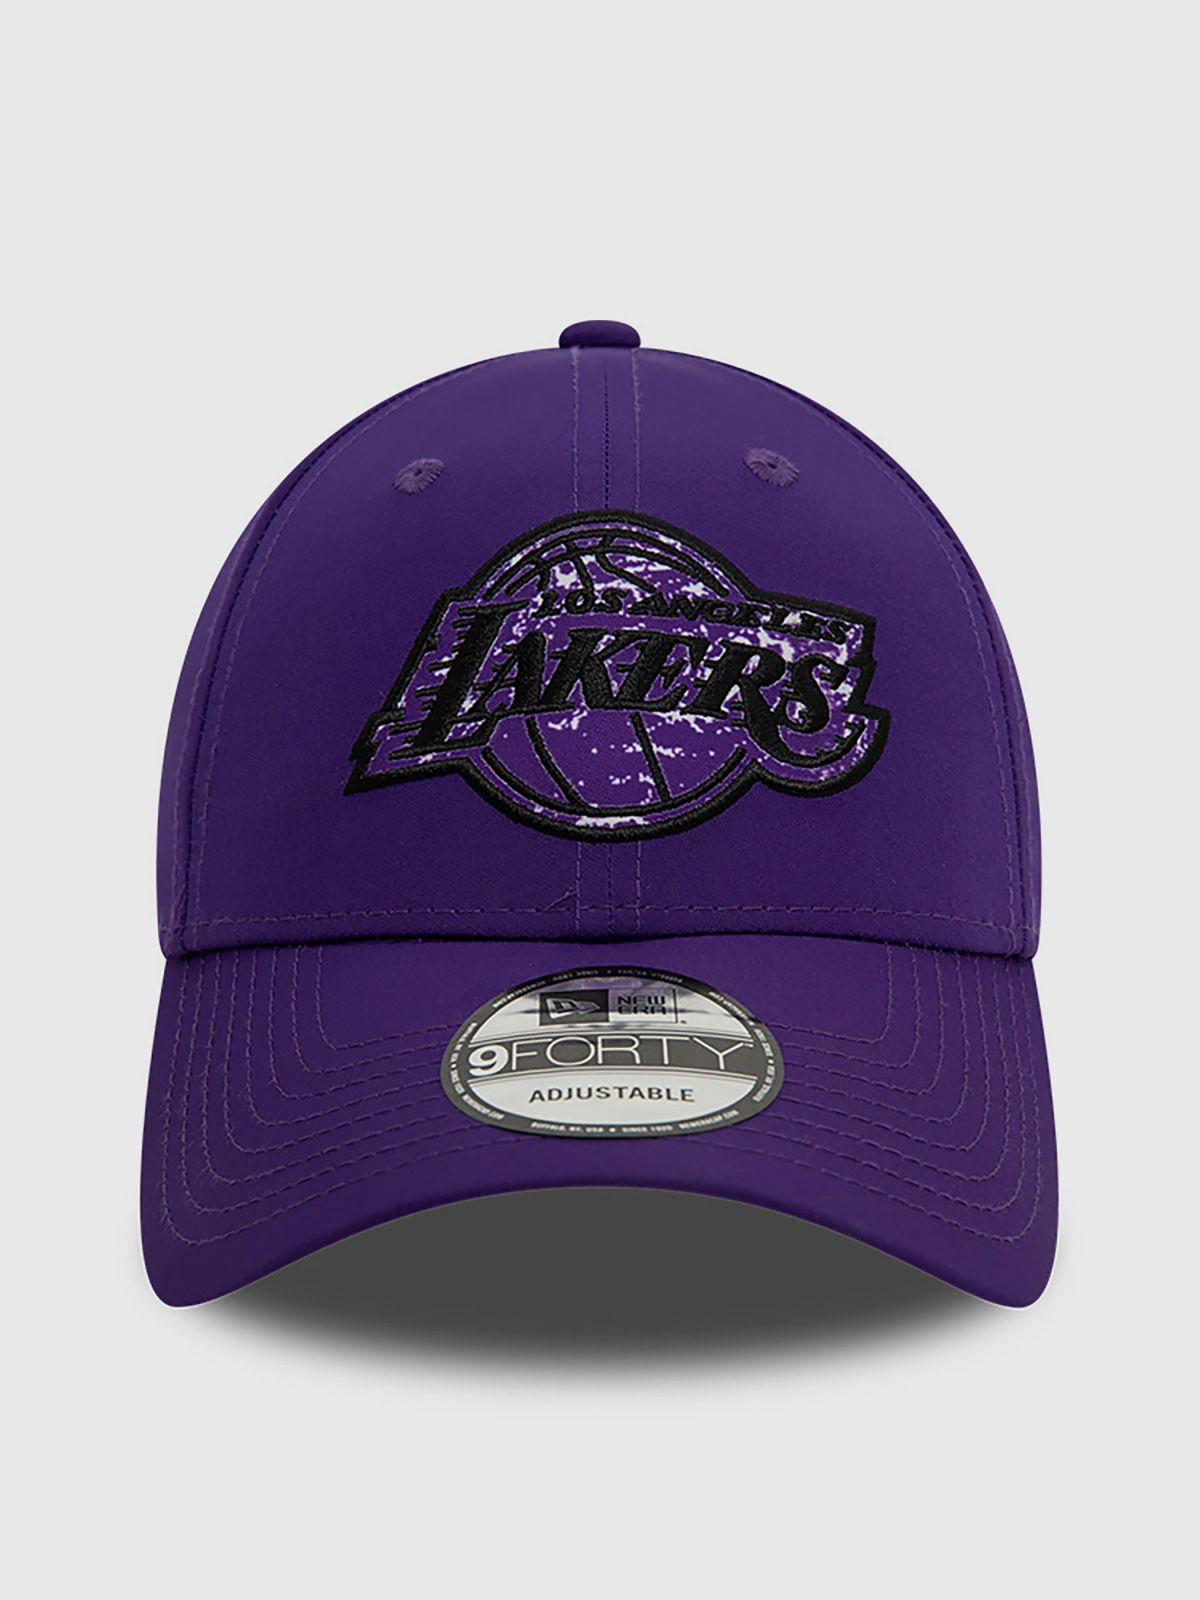  כובע מצחייה עם לוגו Lakers של NEW ERA